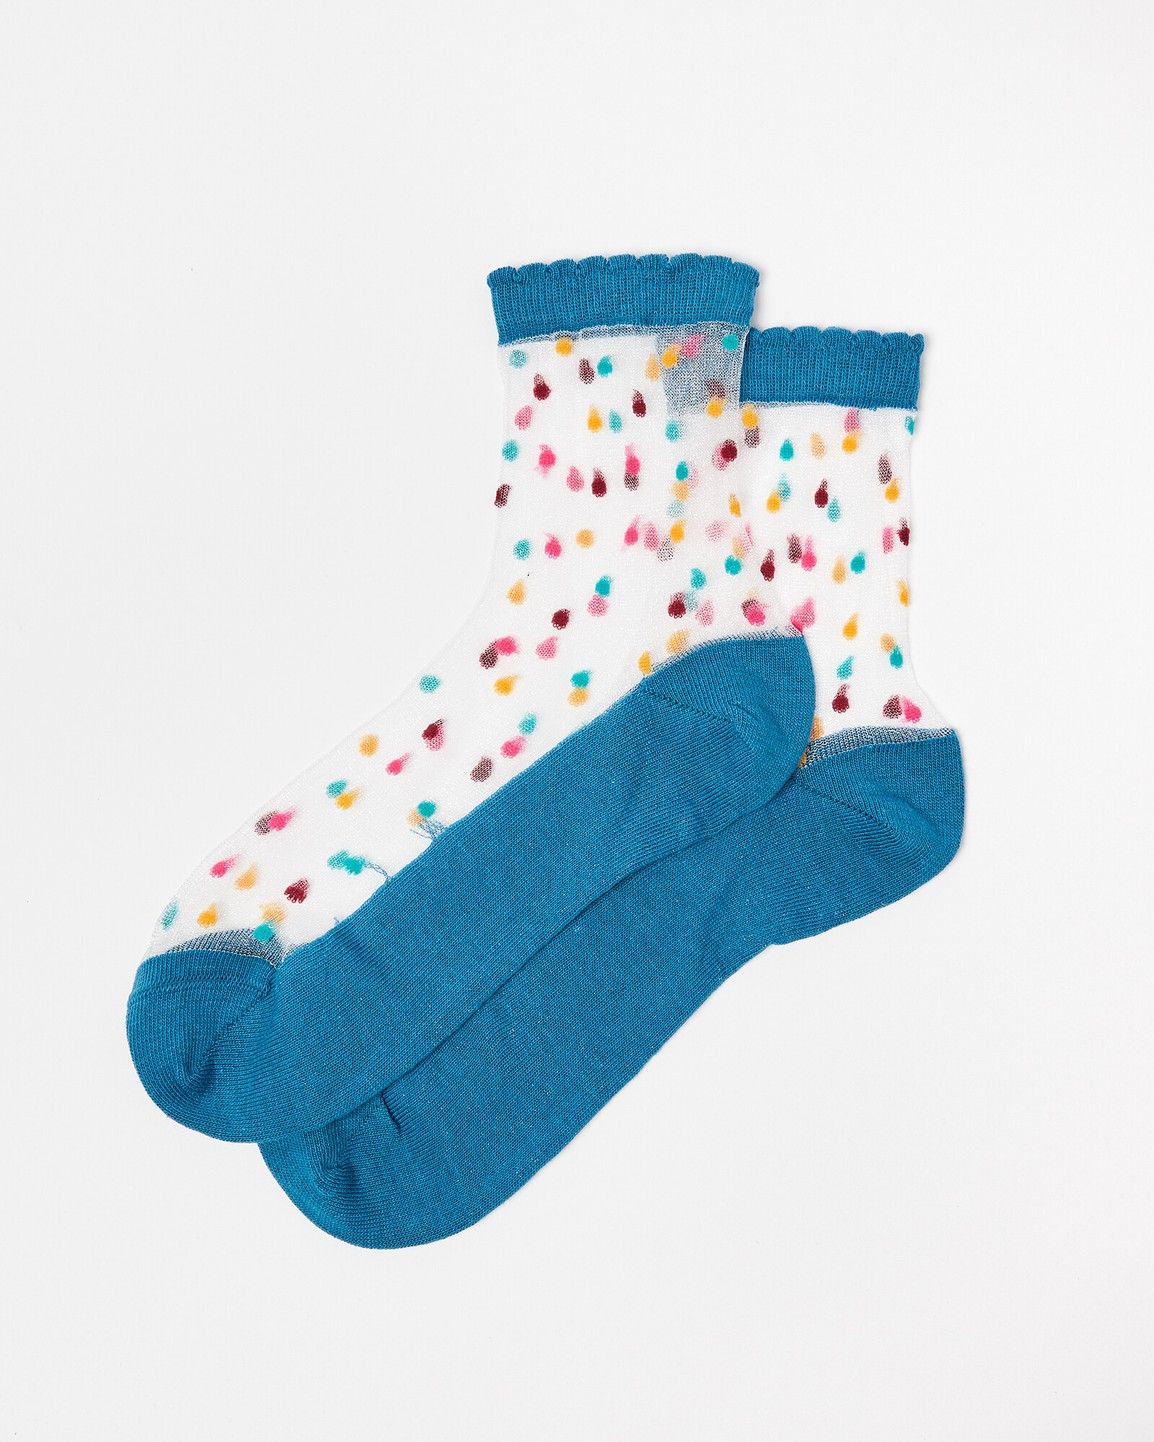 Sheer Spotty Blue Ankle Socks Oliver Bonas